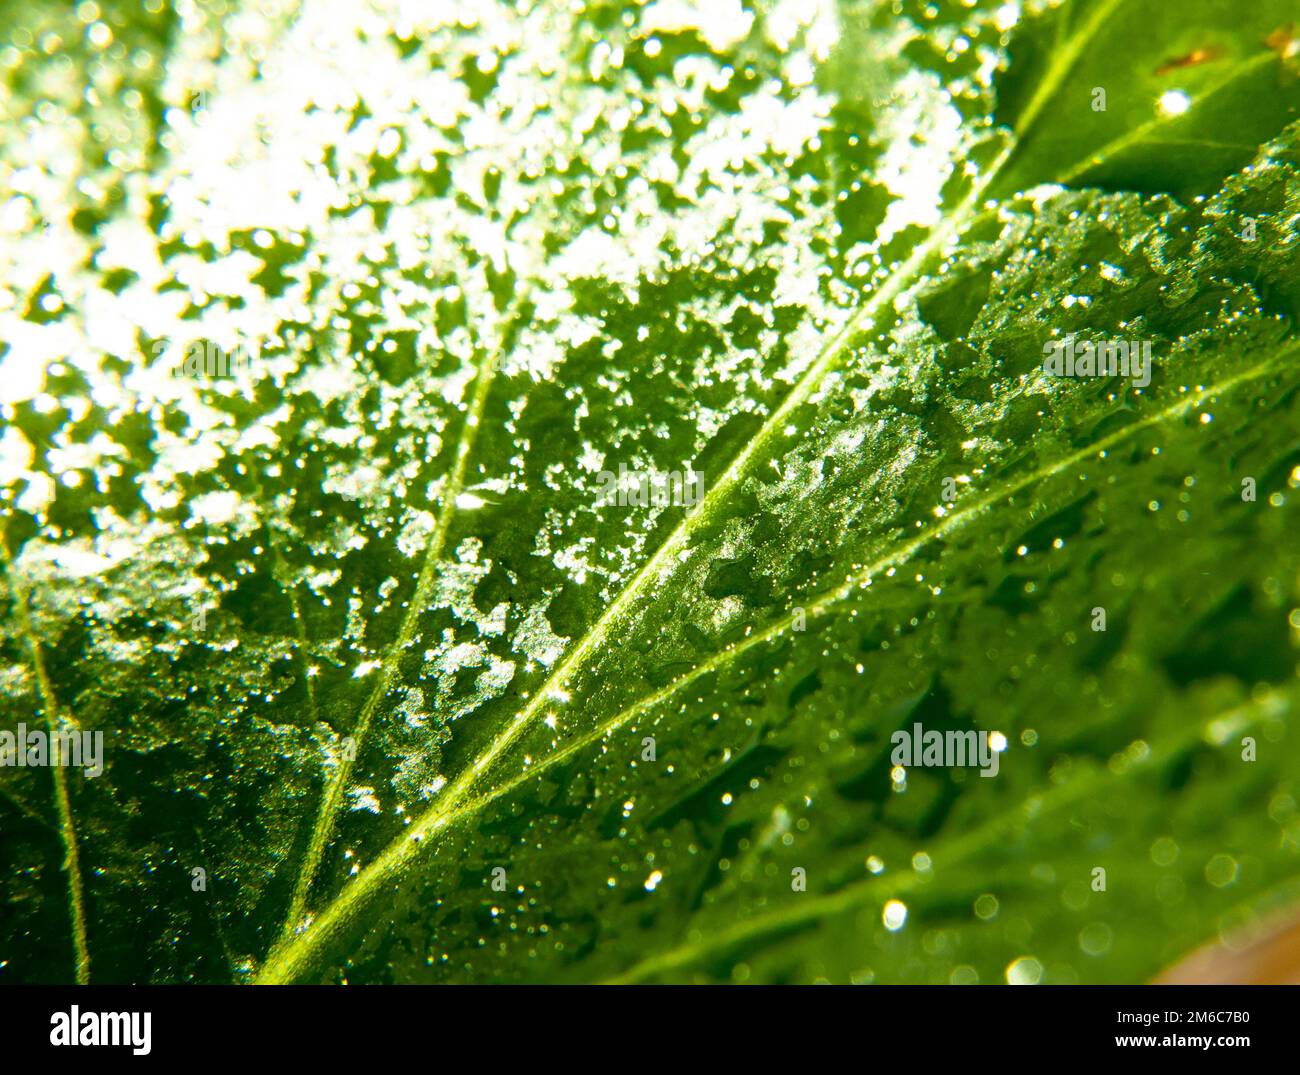 Nahaufnahme des grünen Blatts mit vielen Wassertröpfchen Stockfoto